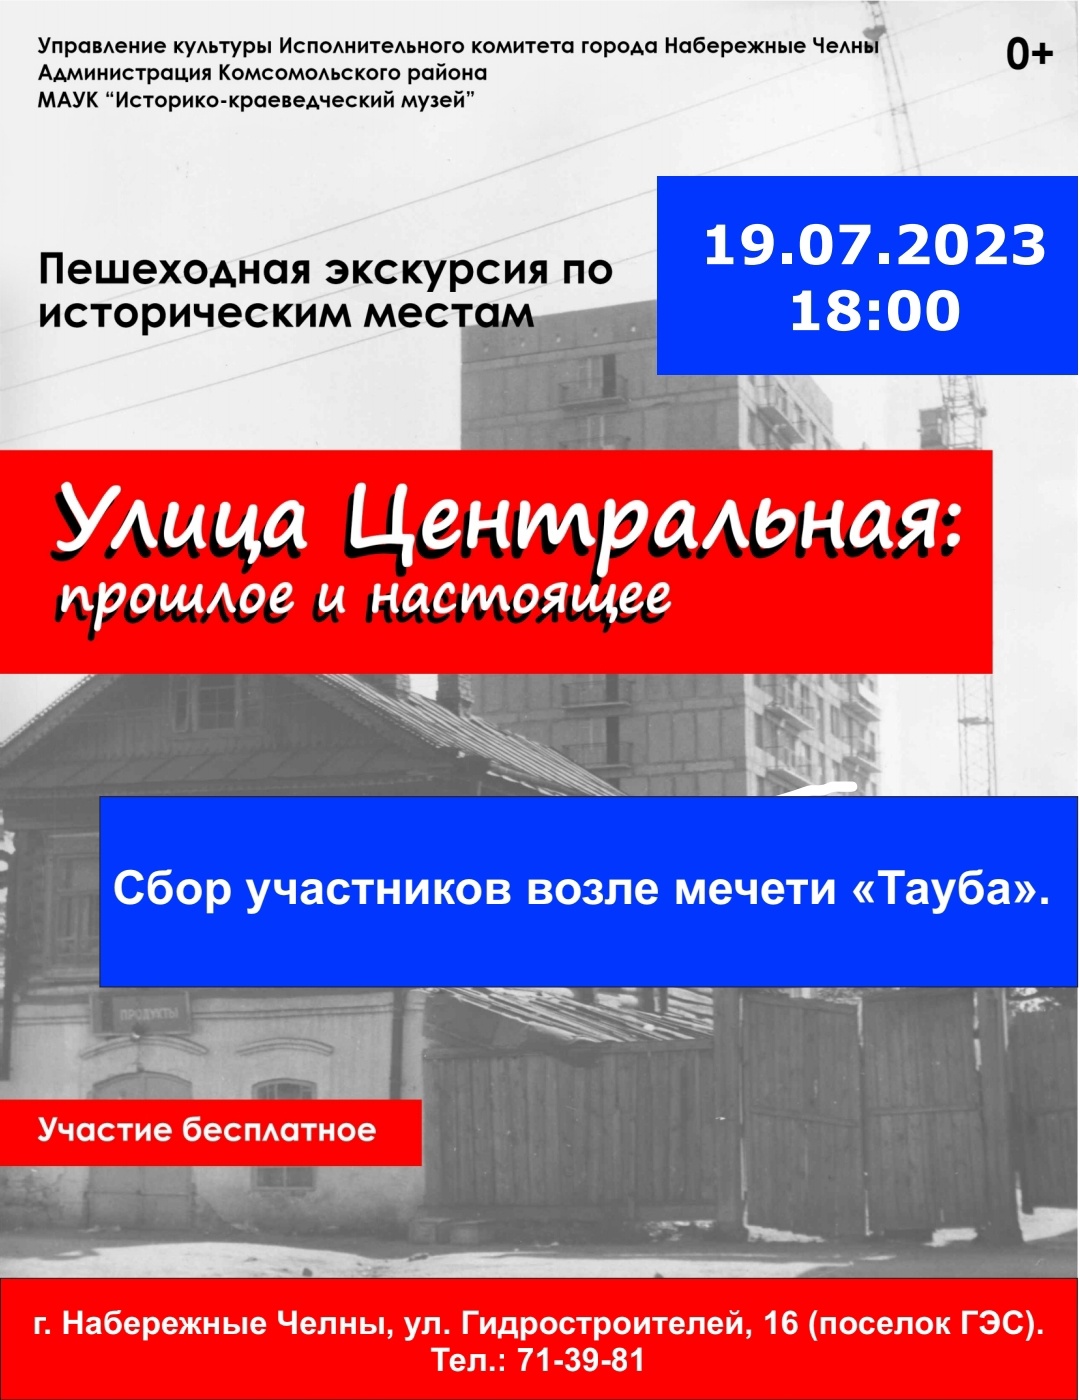 19.07.2023 пройдет бесплатная пешеходная экскурсия "Улица Центральная: прошлое и настоящее".